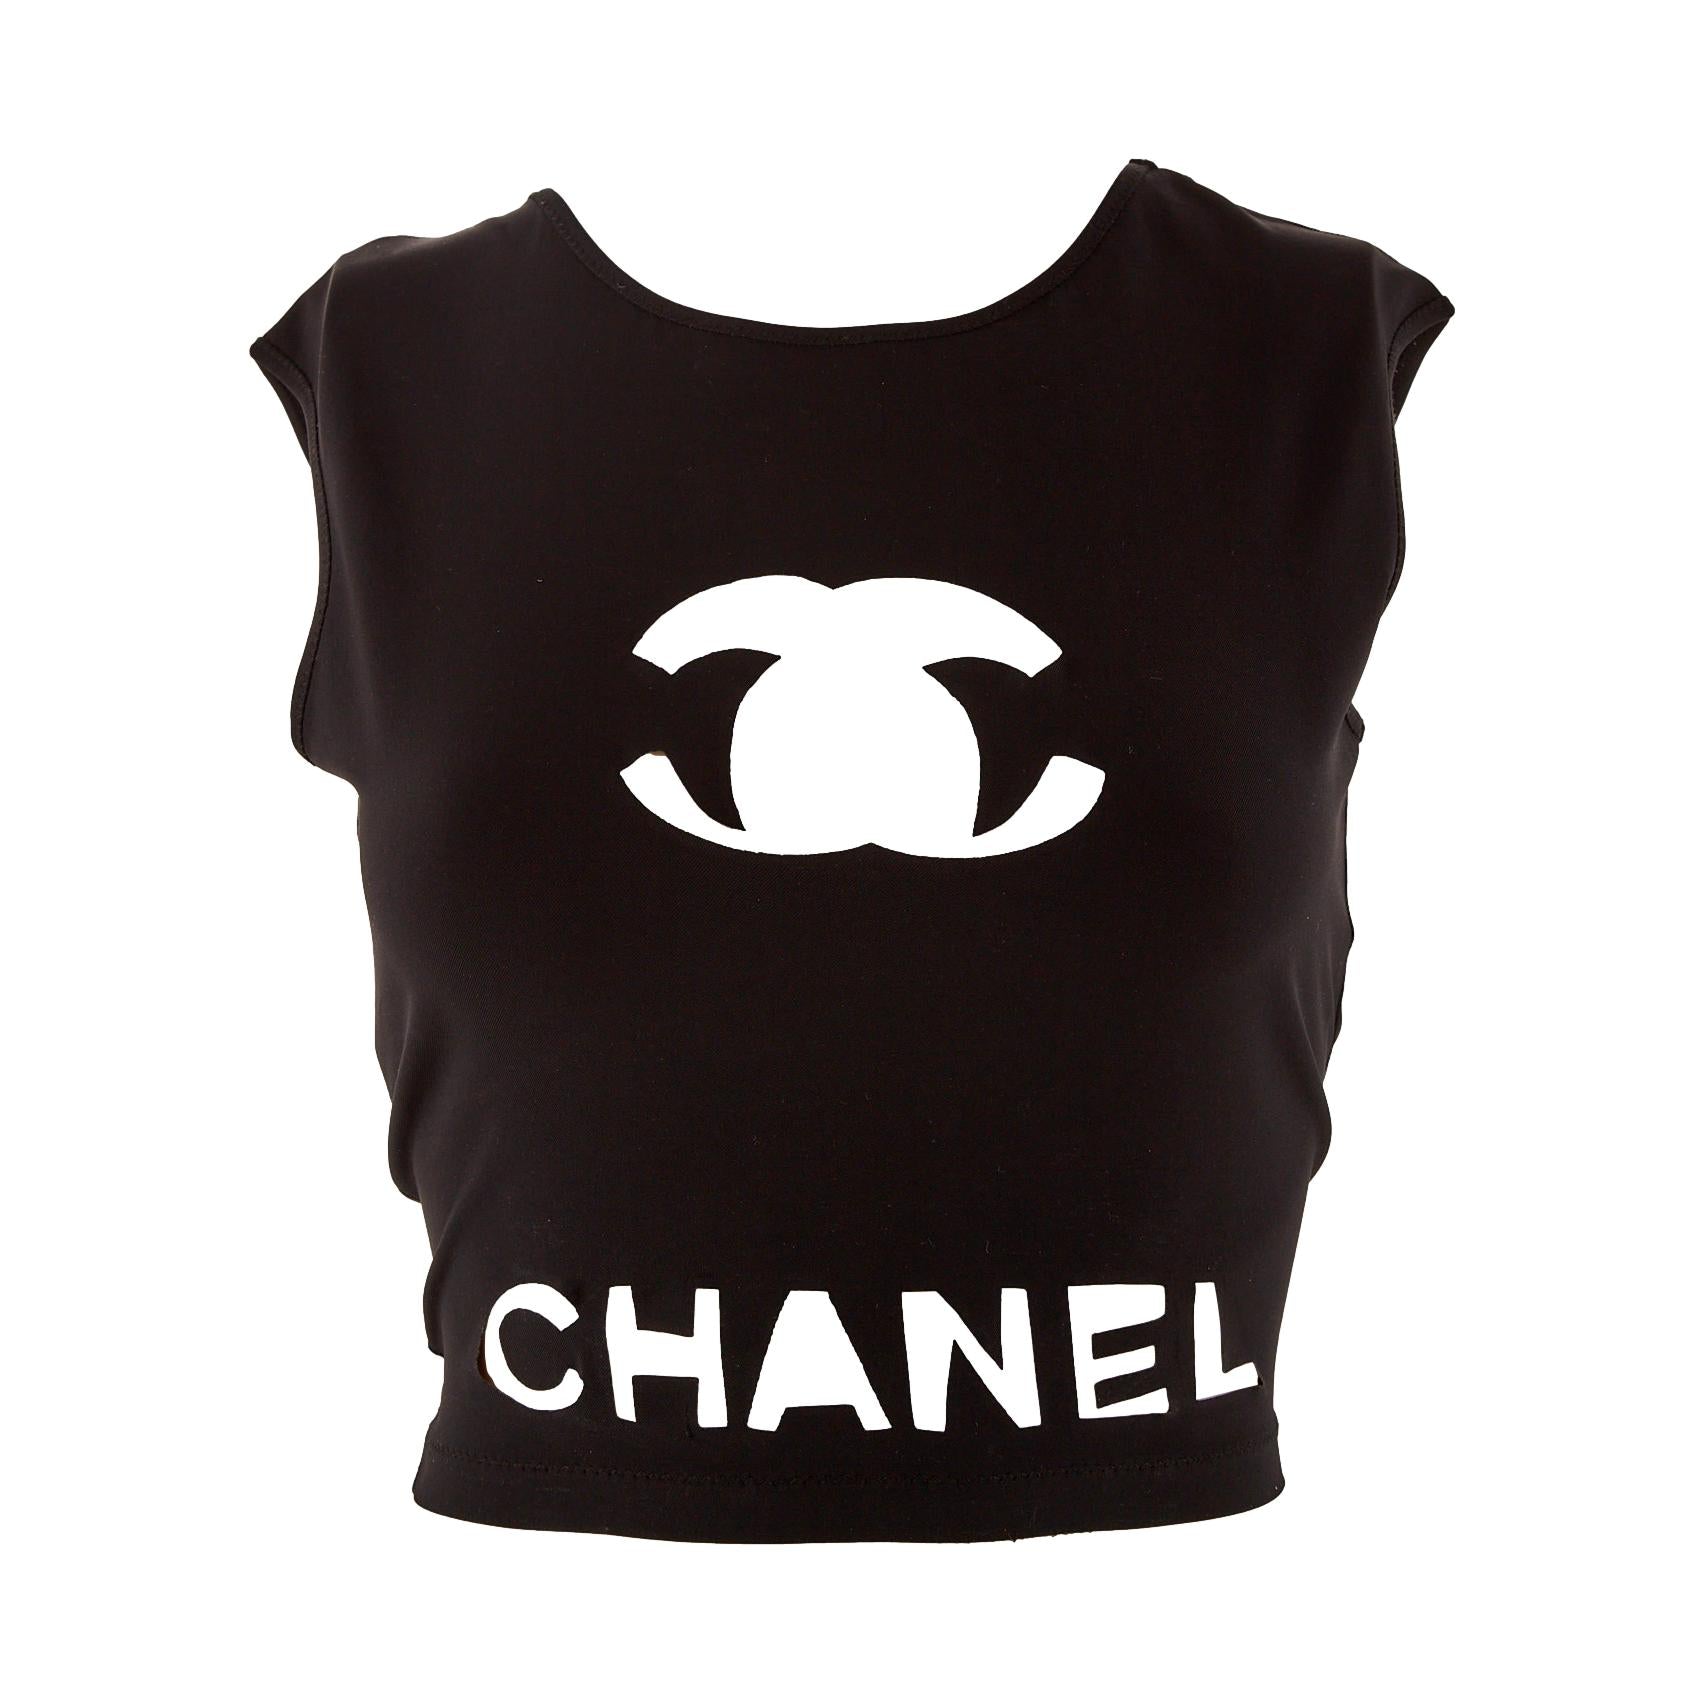 Chanel Black Cami Crop-Top